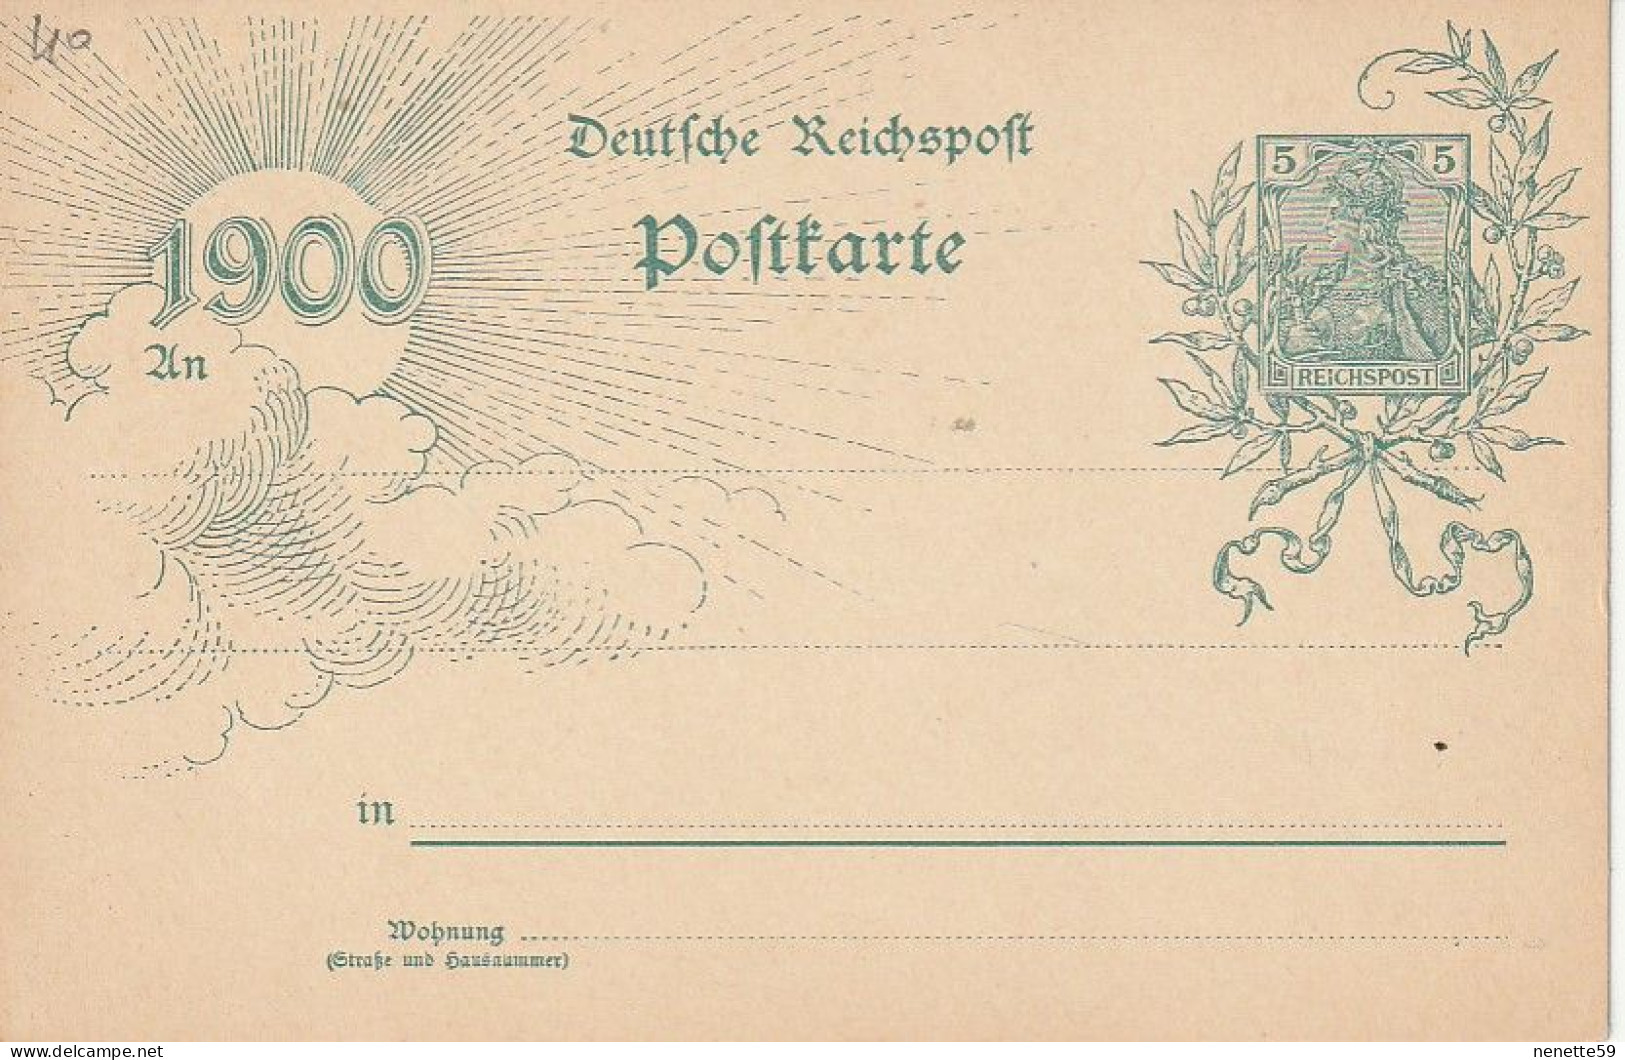 ALLEMAGNE - Entier Postal De 1900 - Deutche Reichspoft Poftkarte 1900 - Cartes Postales